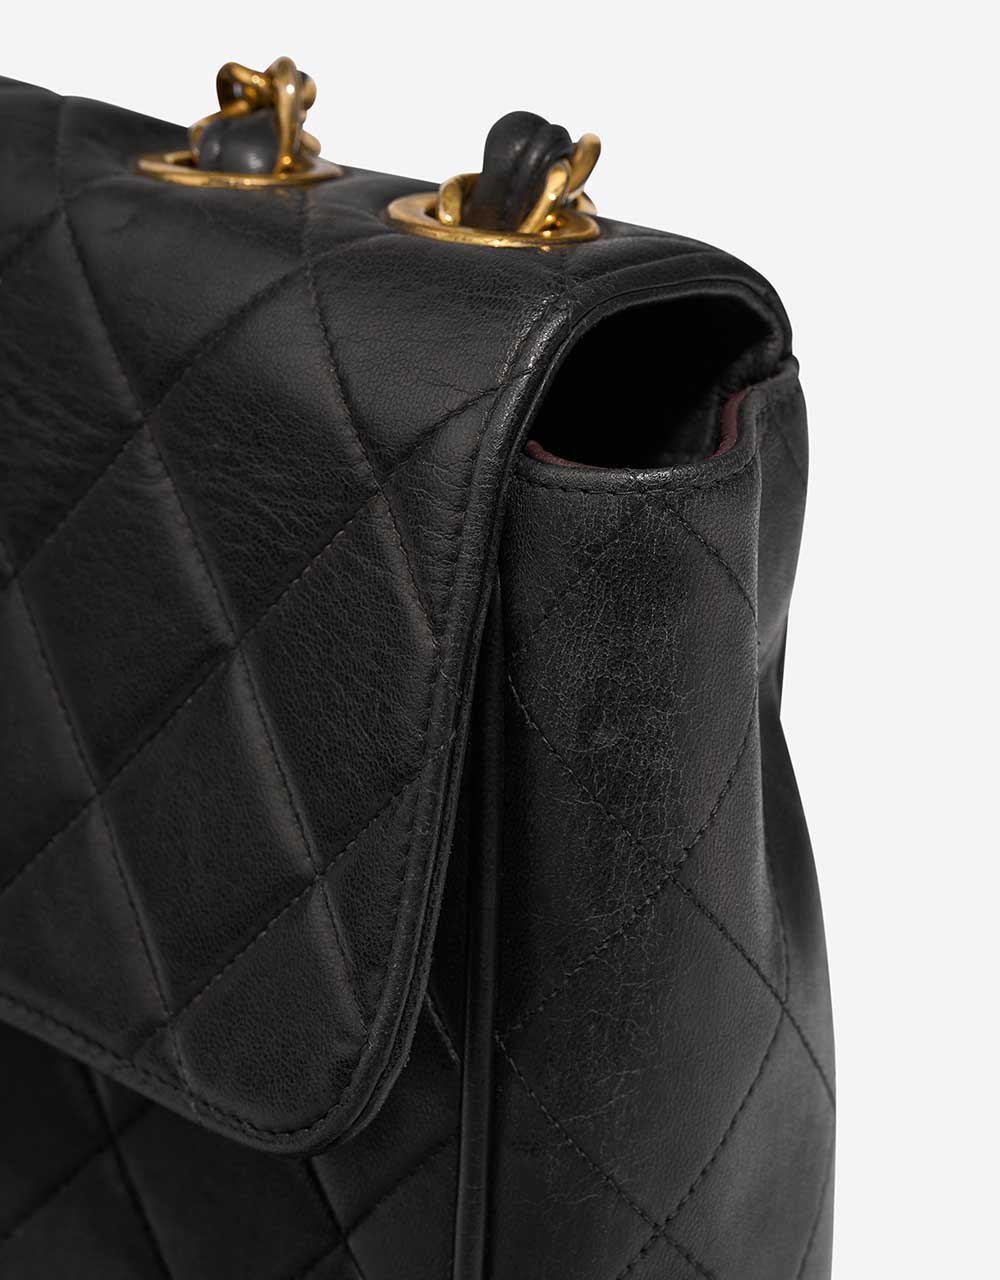 Chanel Timeless Jumbo Schwarz Gebrauchsspuren 1 | Verkaufen Sie Ihre Designer-Tasche auf Saclab.com